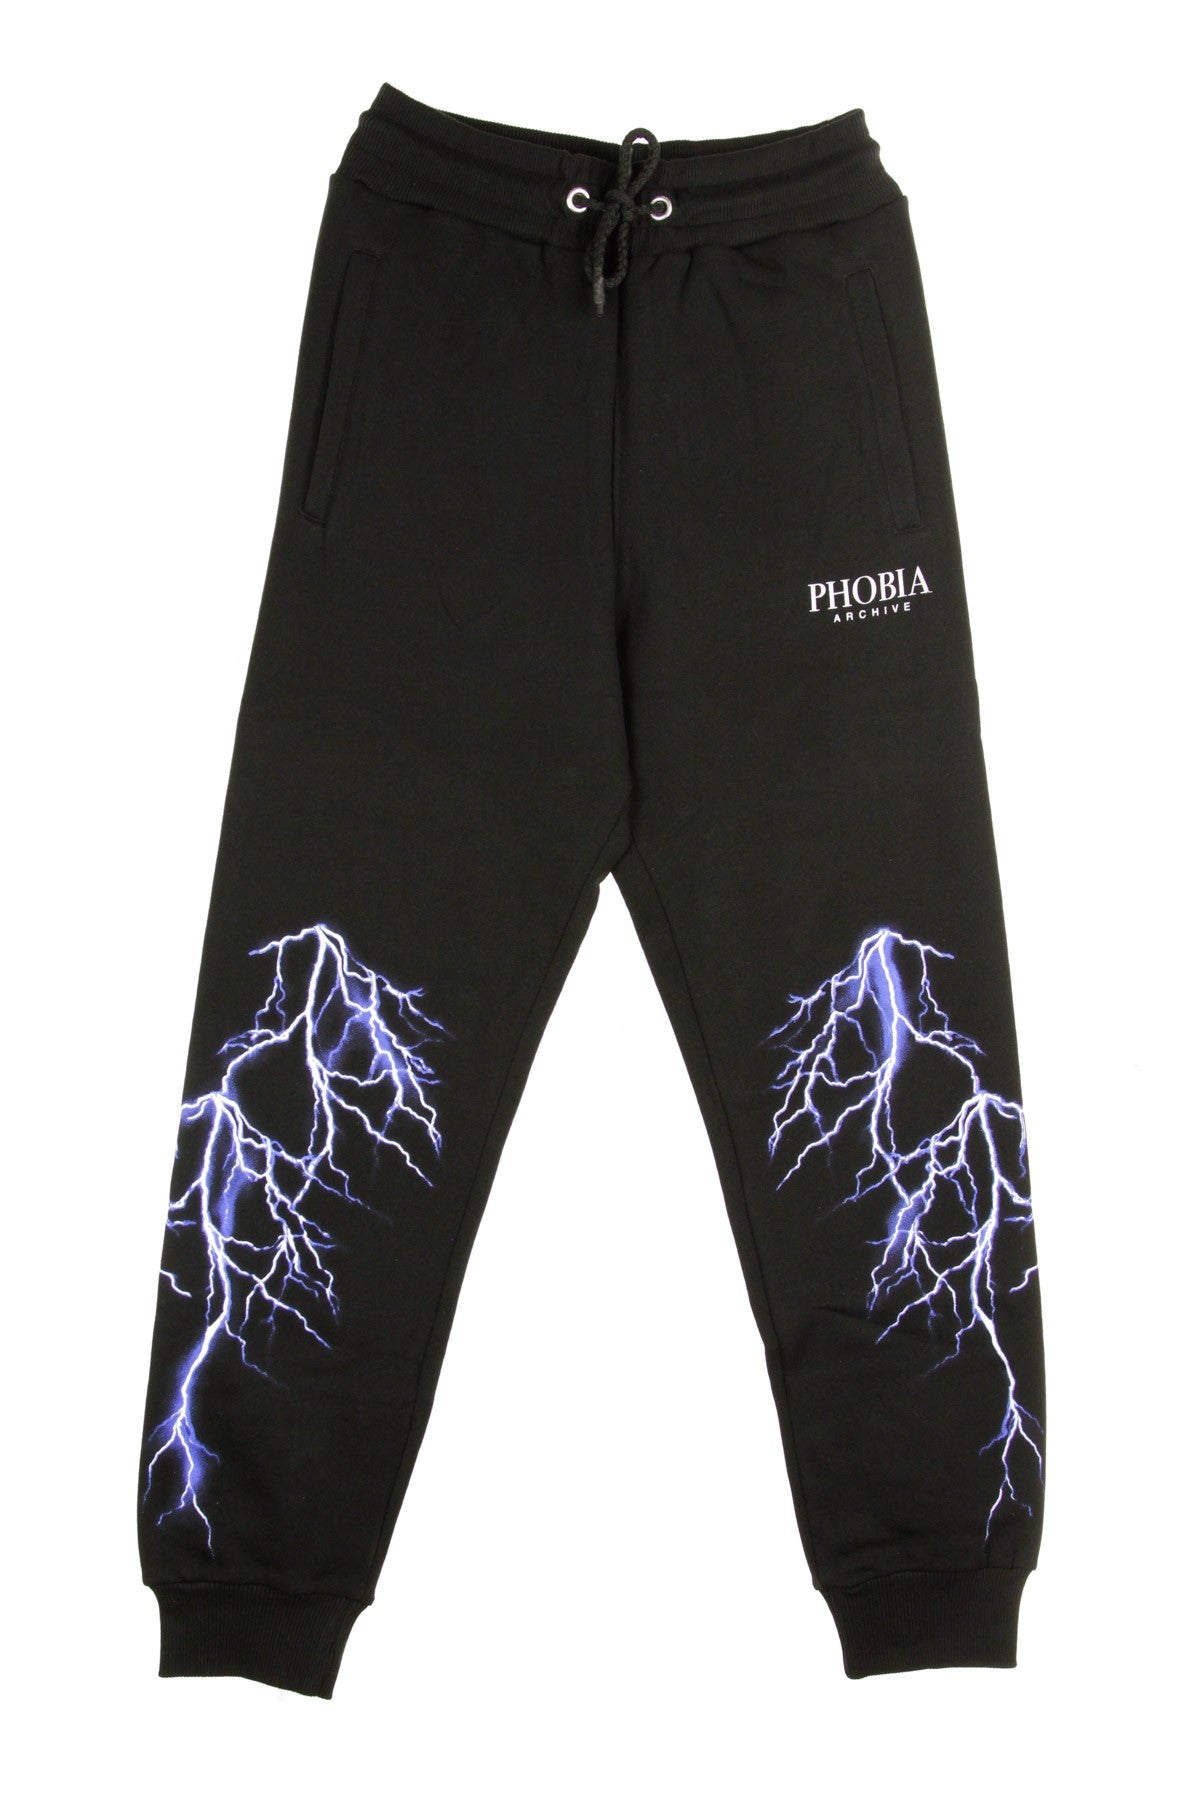 Phobia, Pantalone Tuta Leggero Uomo Blue Lightning Pants, Black/blue